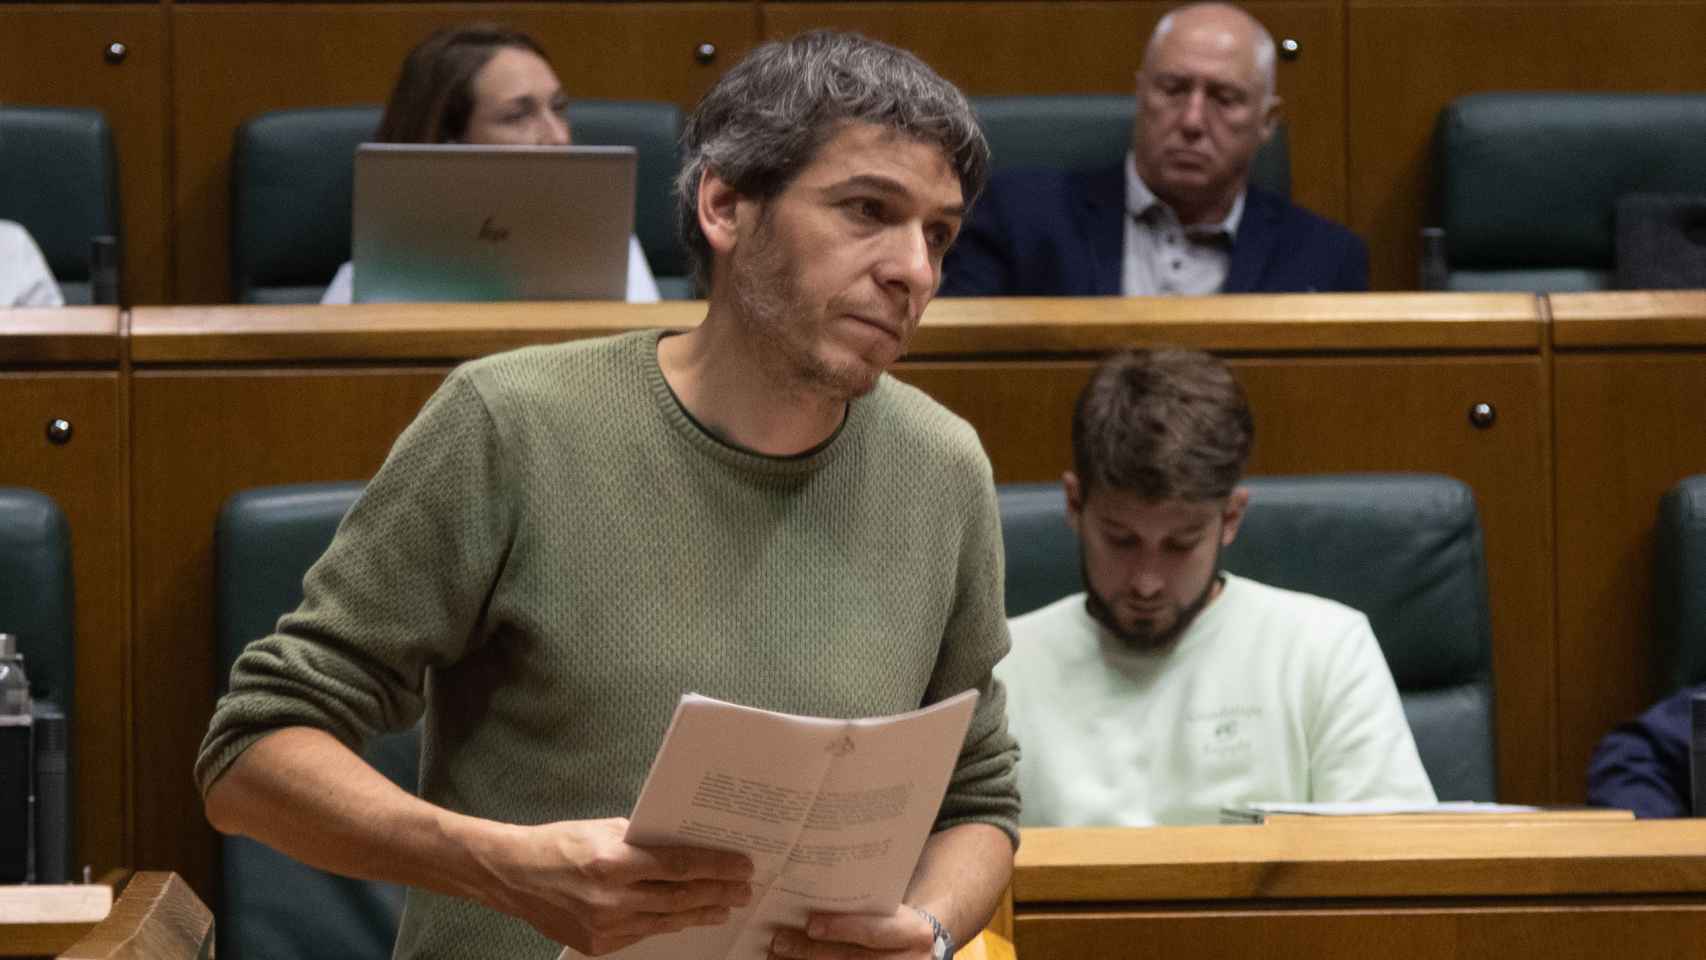 El parlamentario de Elkarrekin Podemos-IU, Jon Hernández, durante el debate por la implementación de la tasa turística en Euskadi / Legebiltzarra